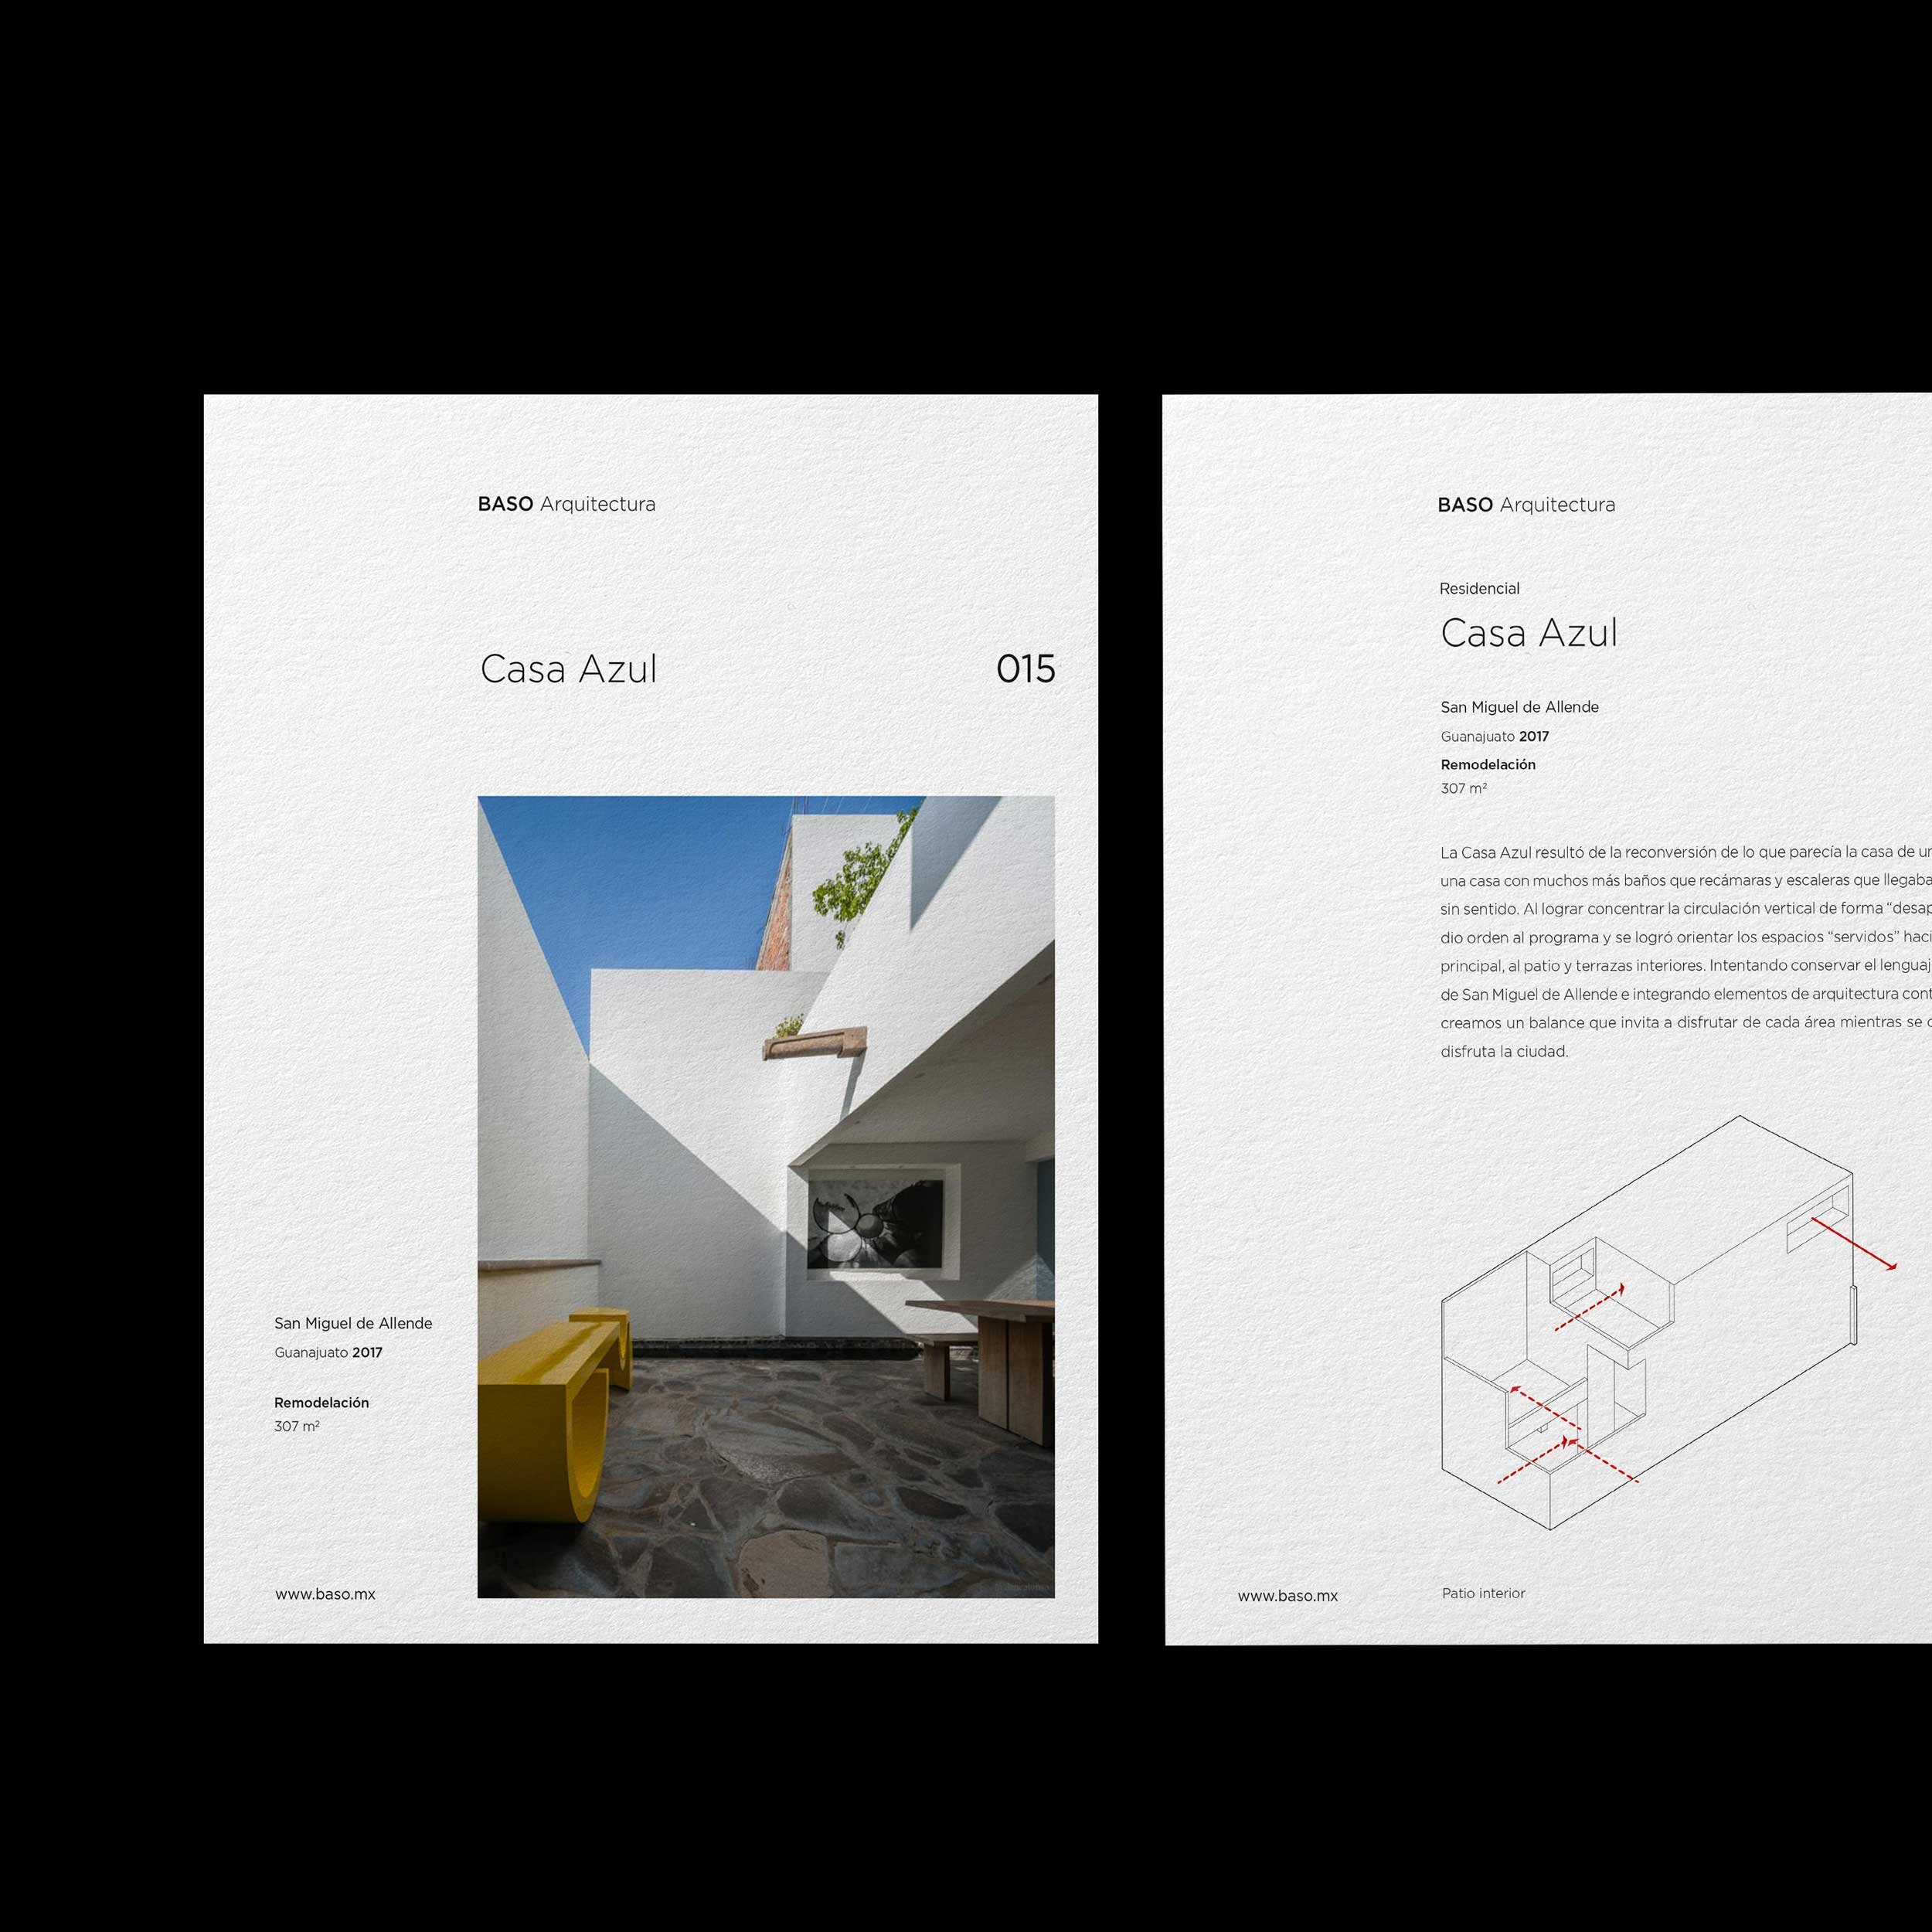 behagen-Branding-and-Marketing-for-Real-Estate-BASO-Arquitectura-Cover.jpg